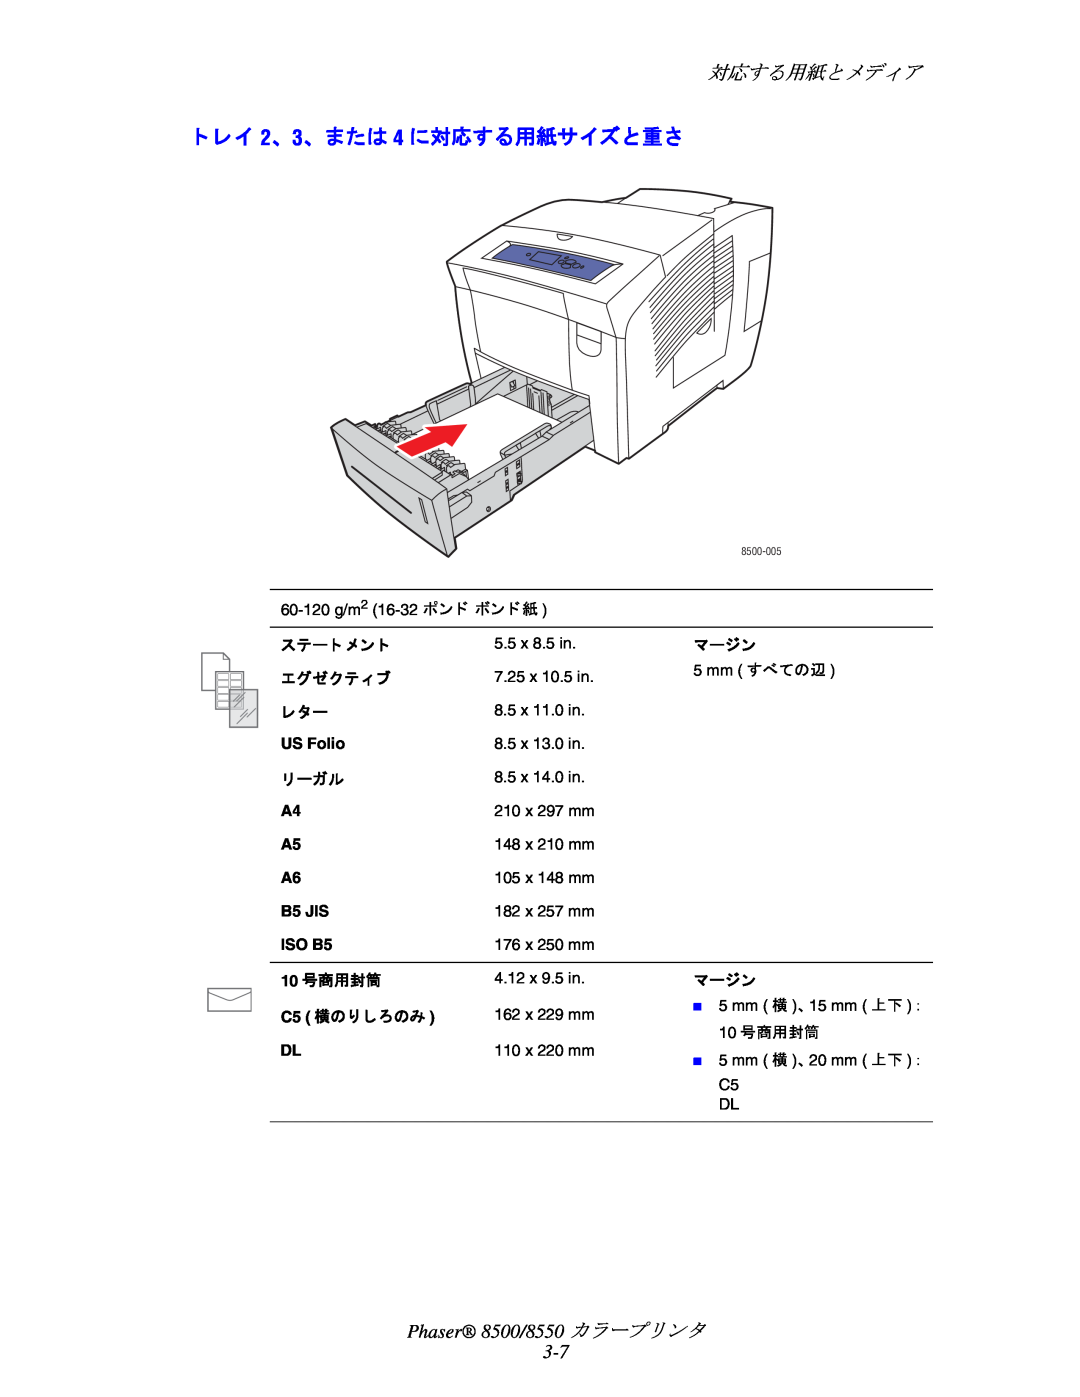 Xerox manual ト レイ 2、 3、 または 4 に対応する用紙サイズと重さ, 対応する用紙と メデ ィ ア, Phaser 8500/8550 カ ラープ リ ン タ 3-7 